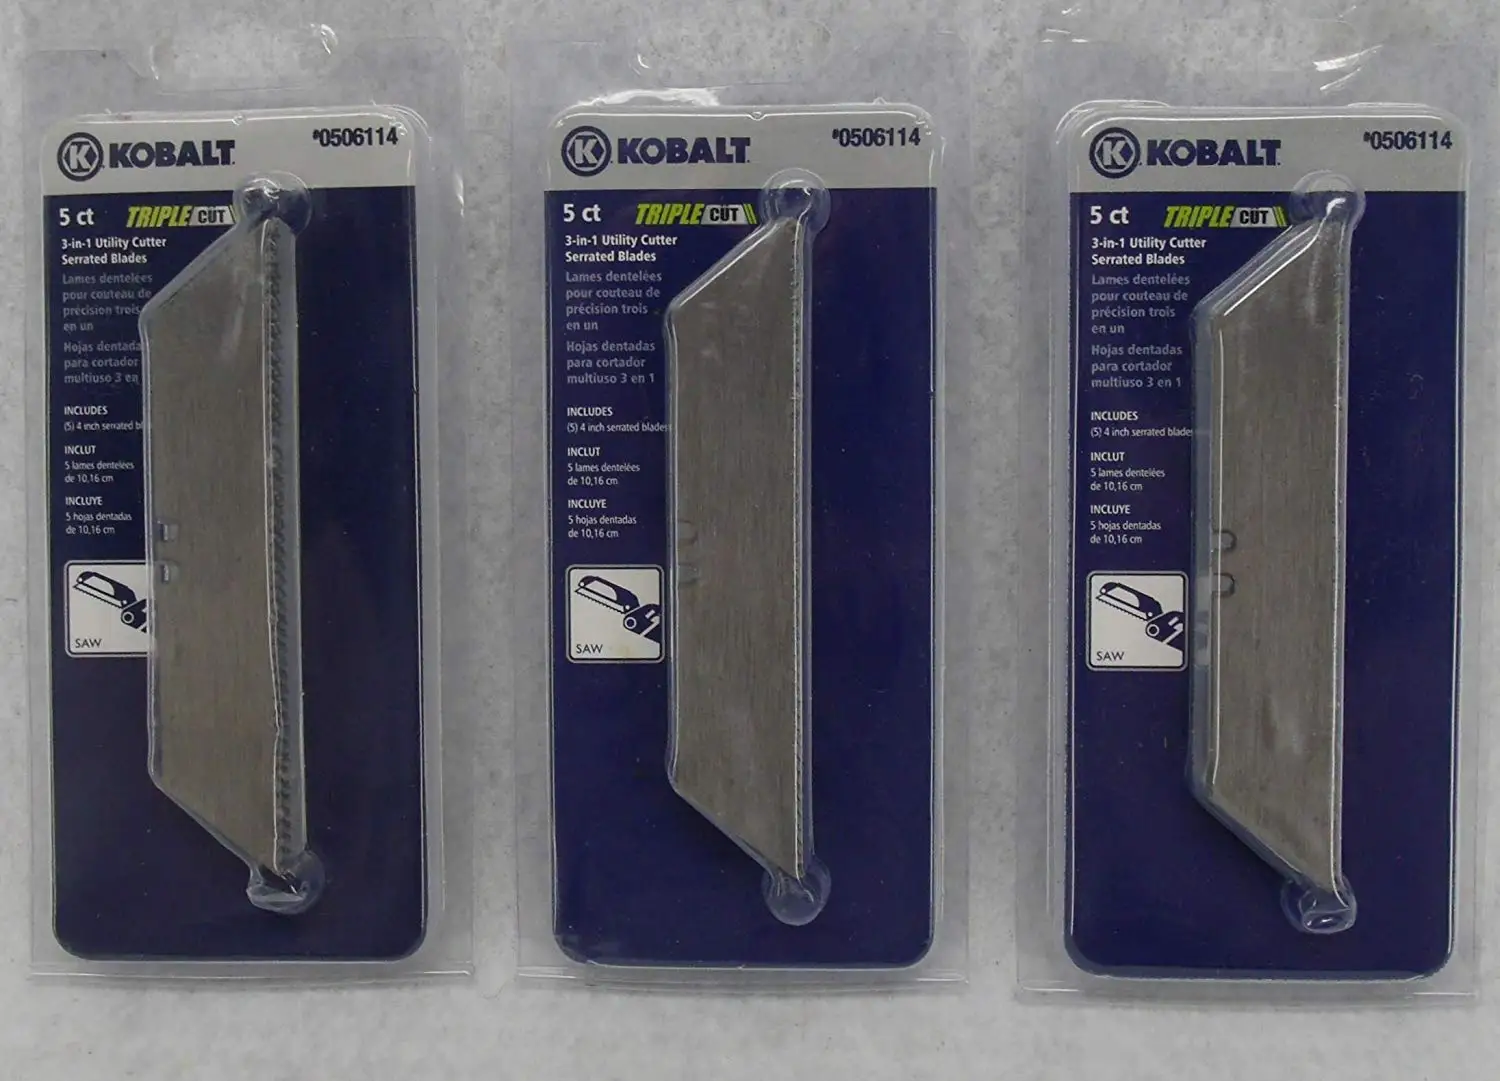 kobalt multi tool metal cutting blade